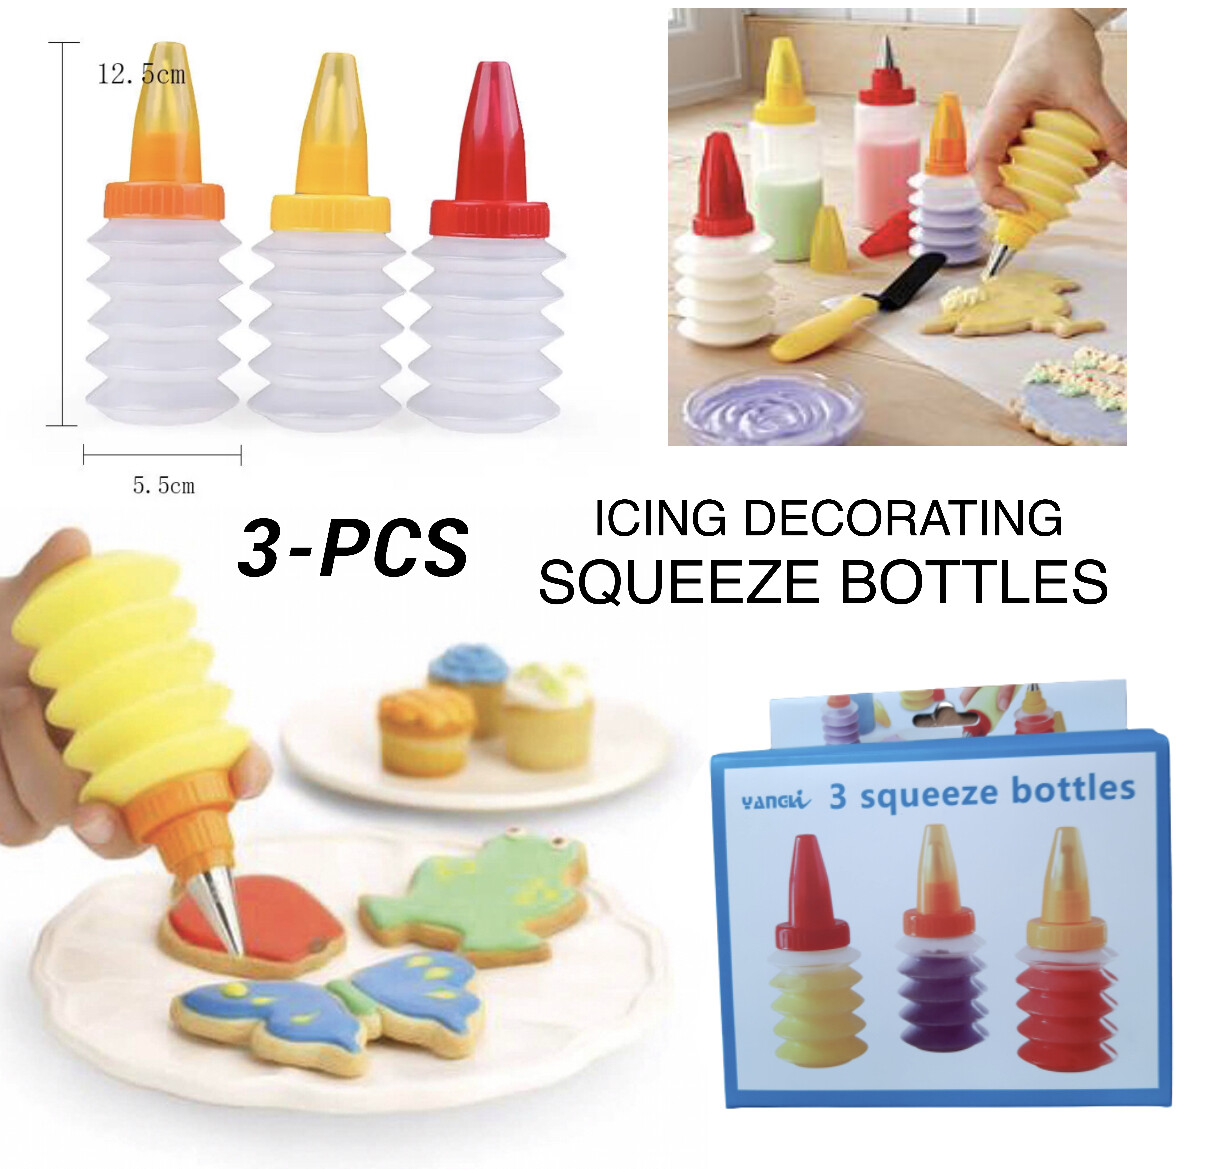 3-Pcs Squeeze Bottles